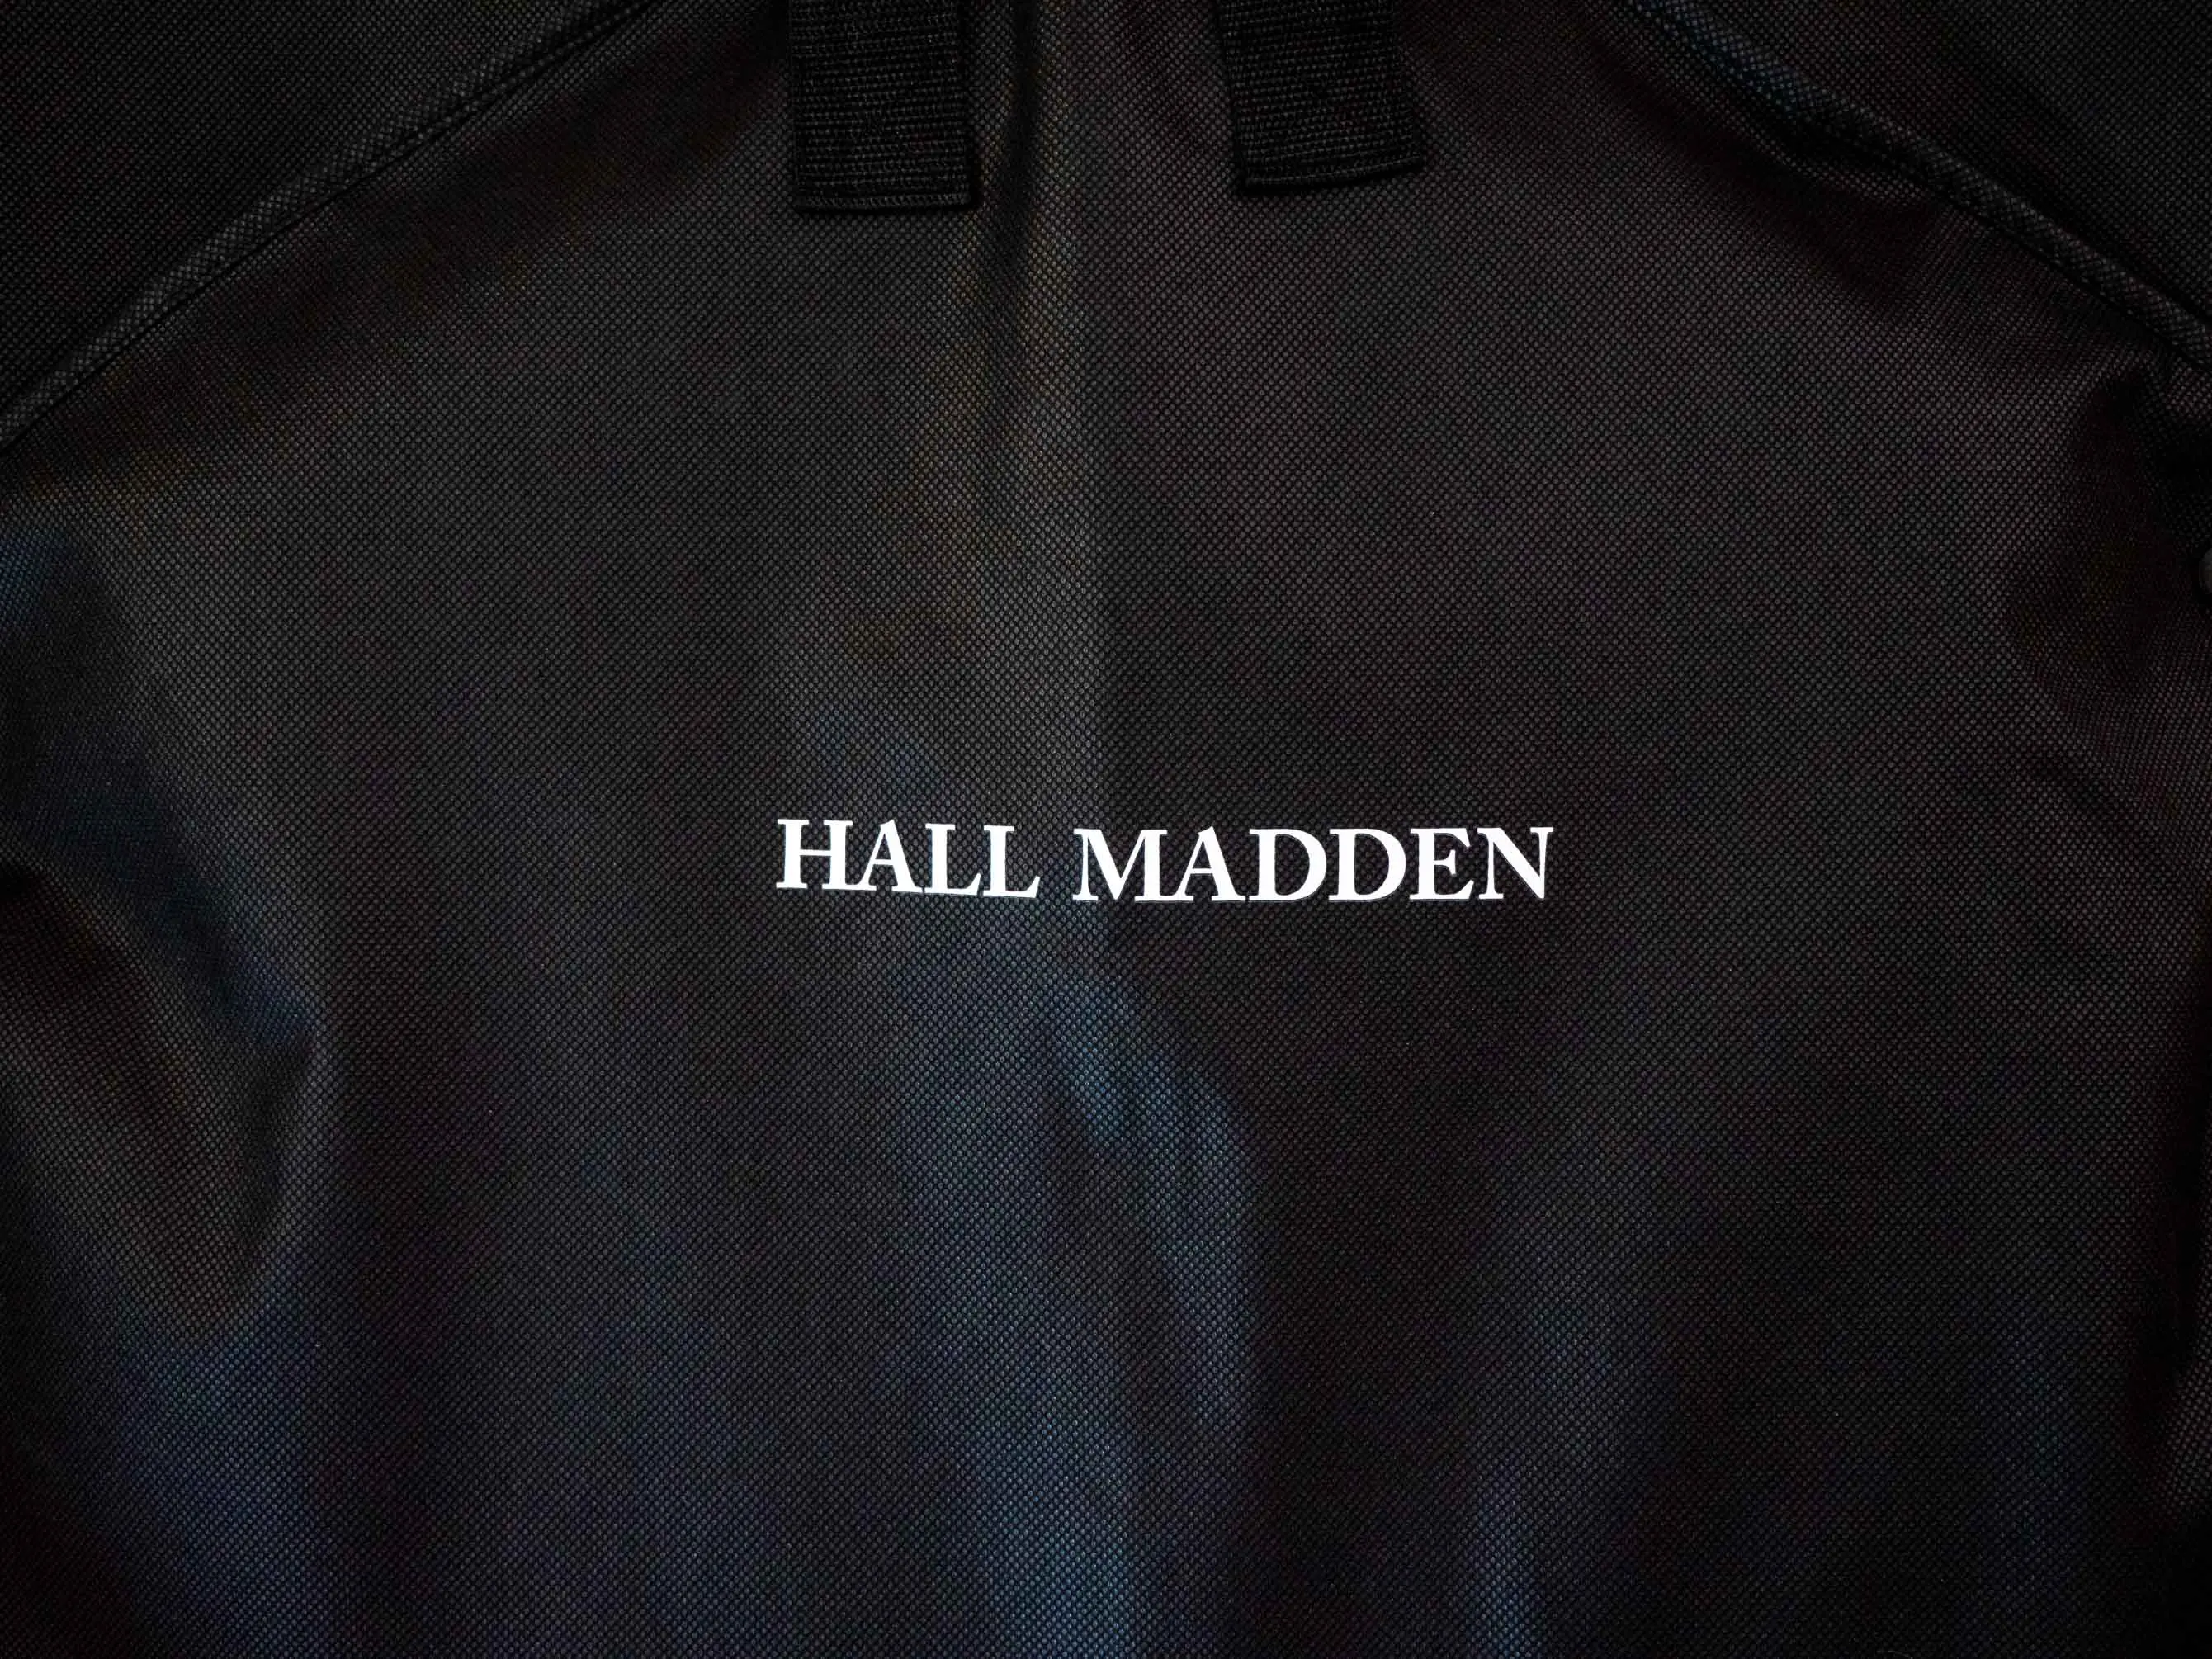 Hall Madden logo